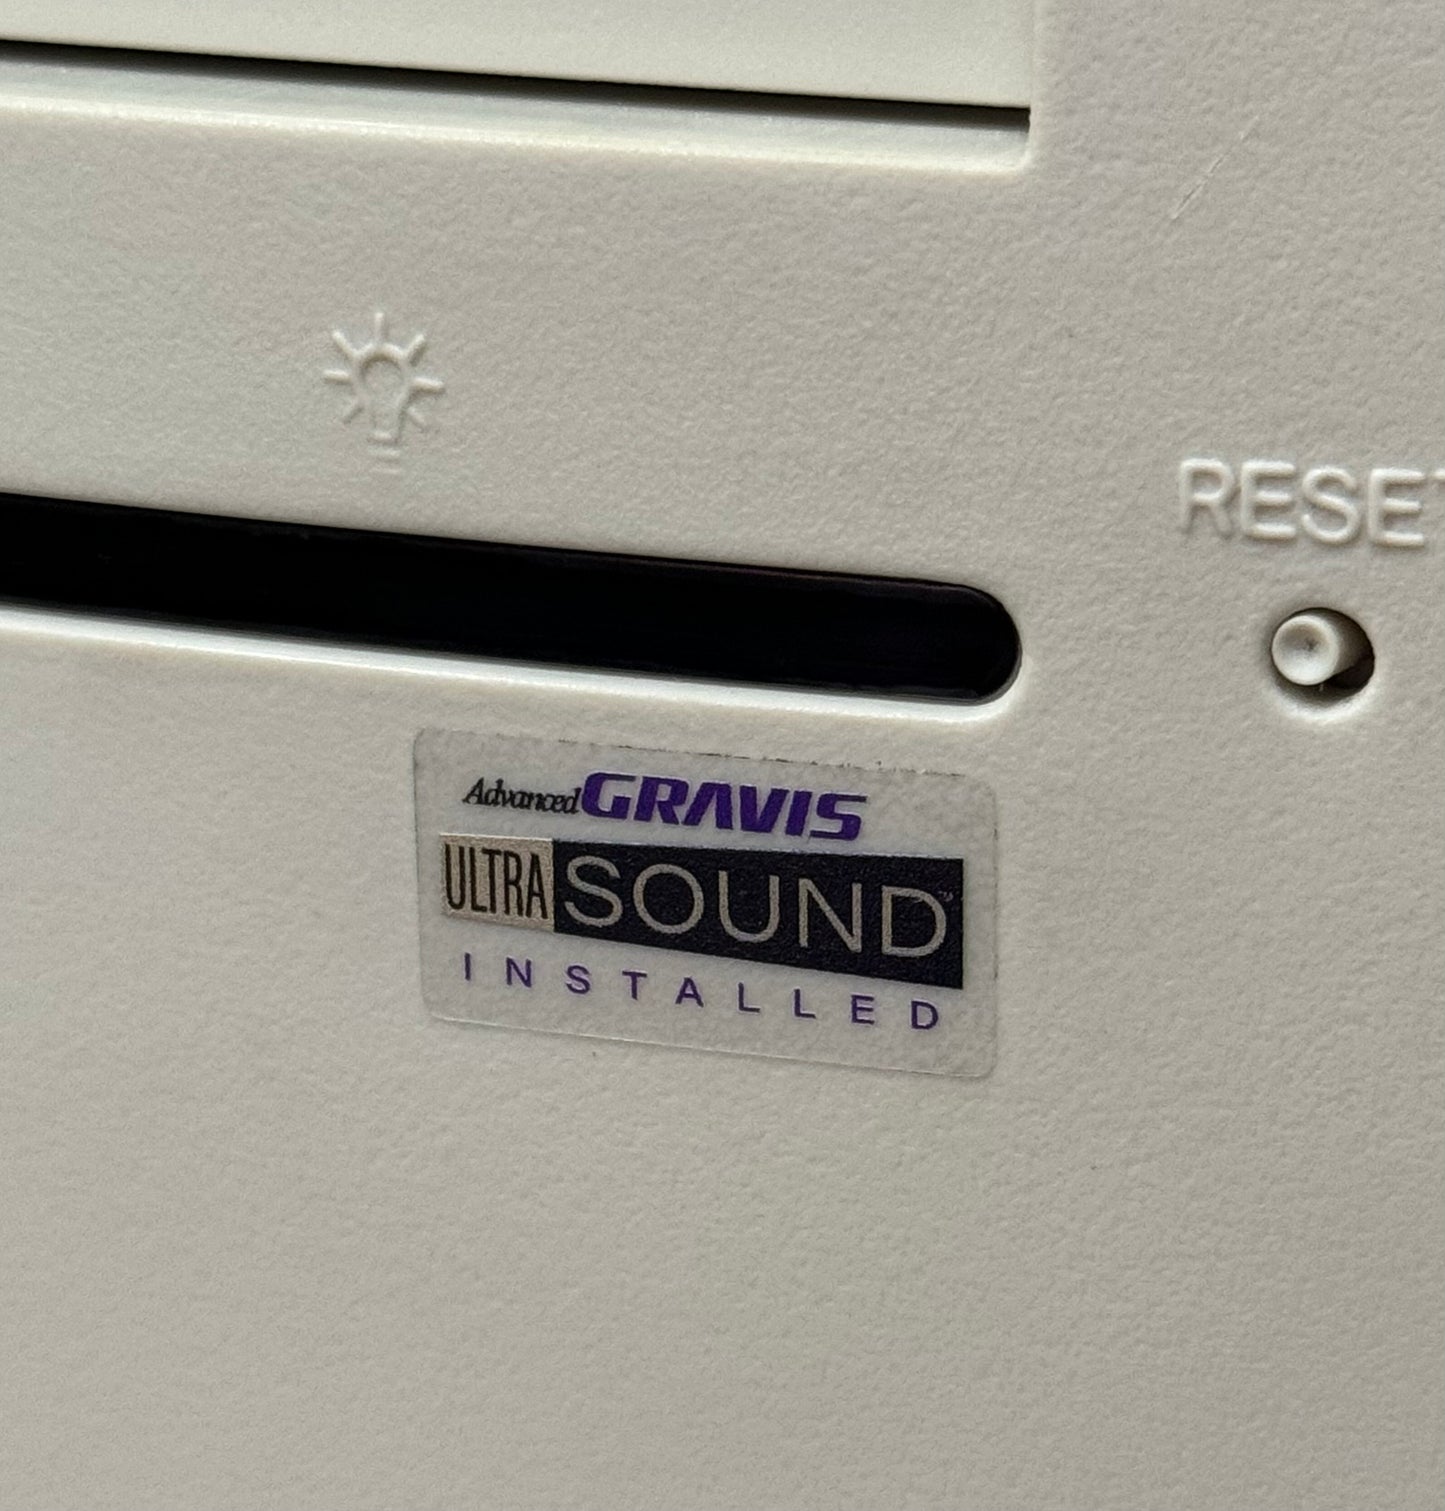 Gravis UltraSound "Installed" Purple Audio Case Badge Sticker - Clear